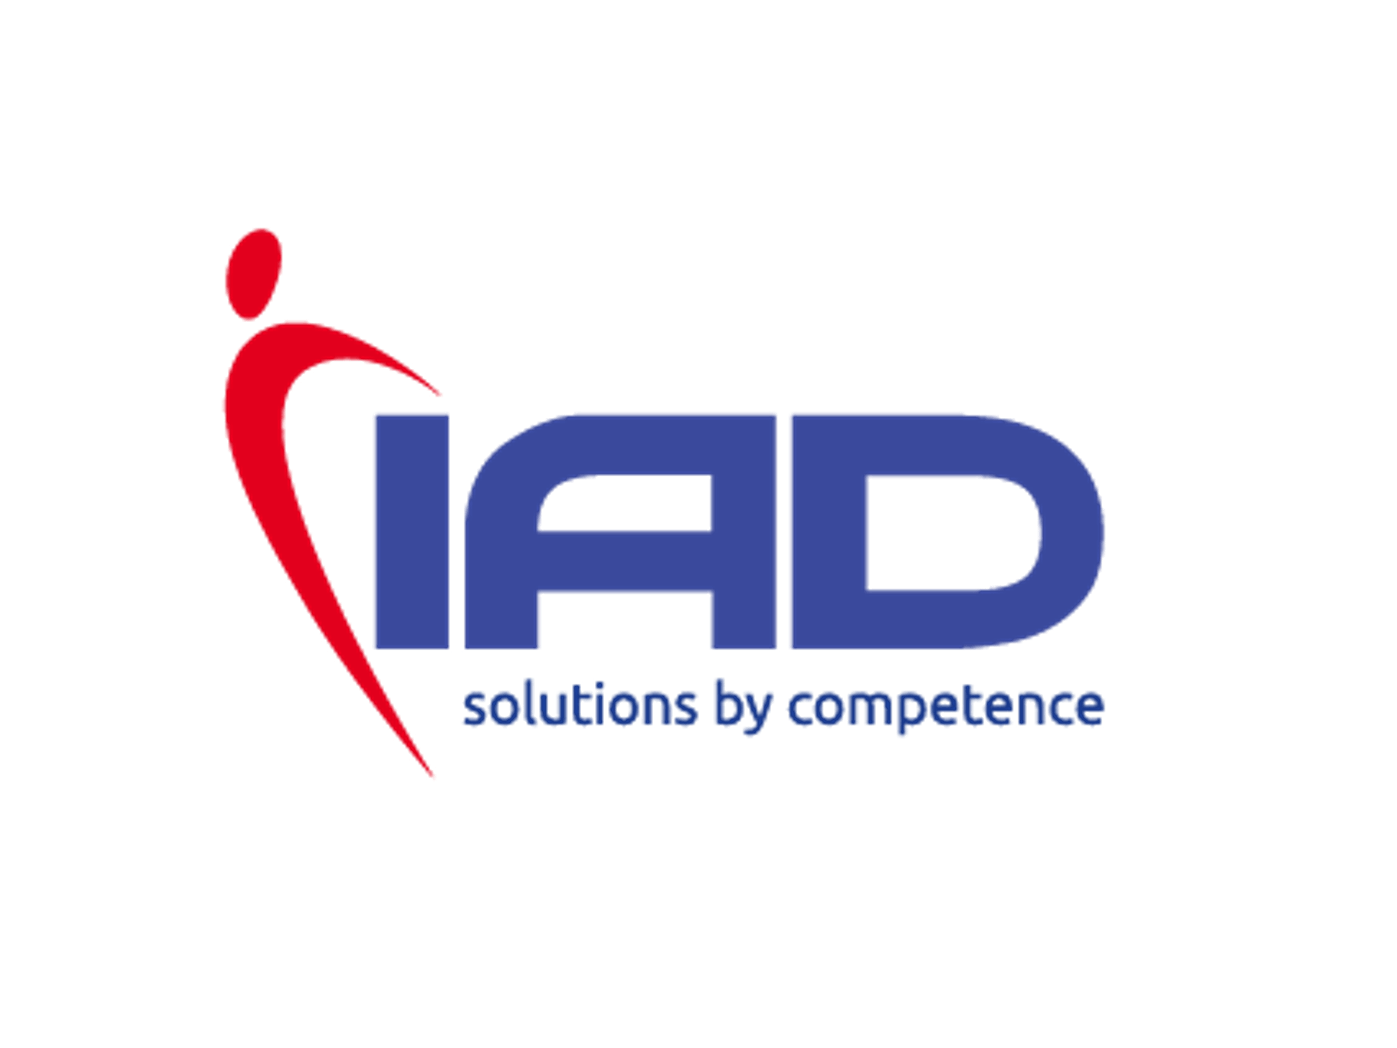 IAD logo